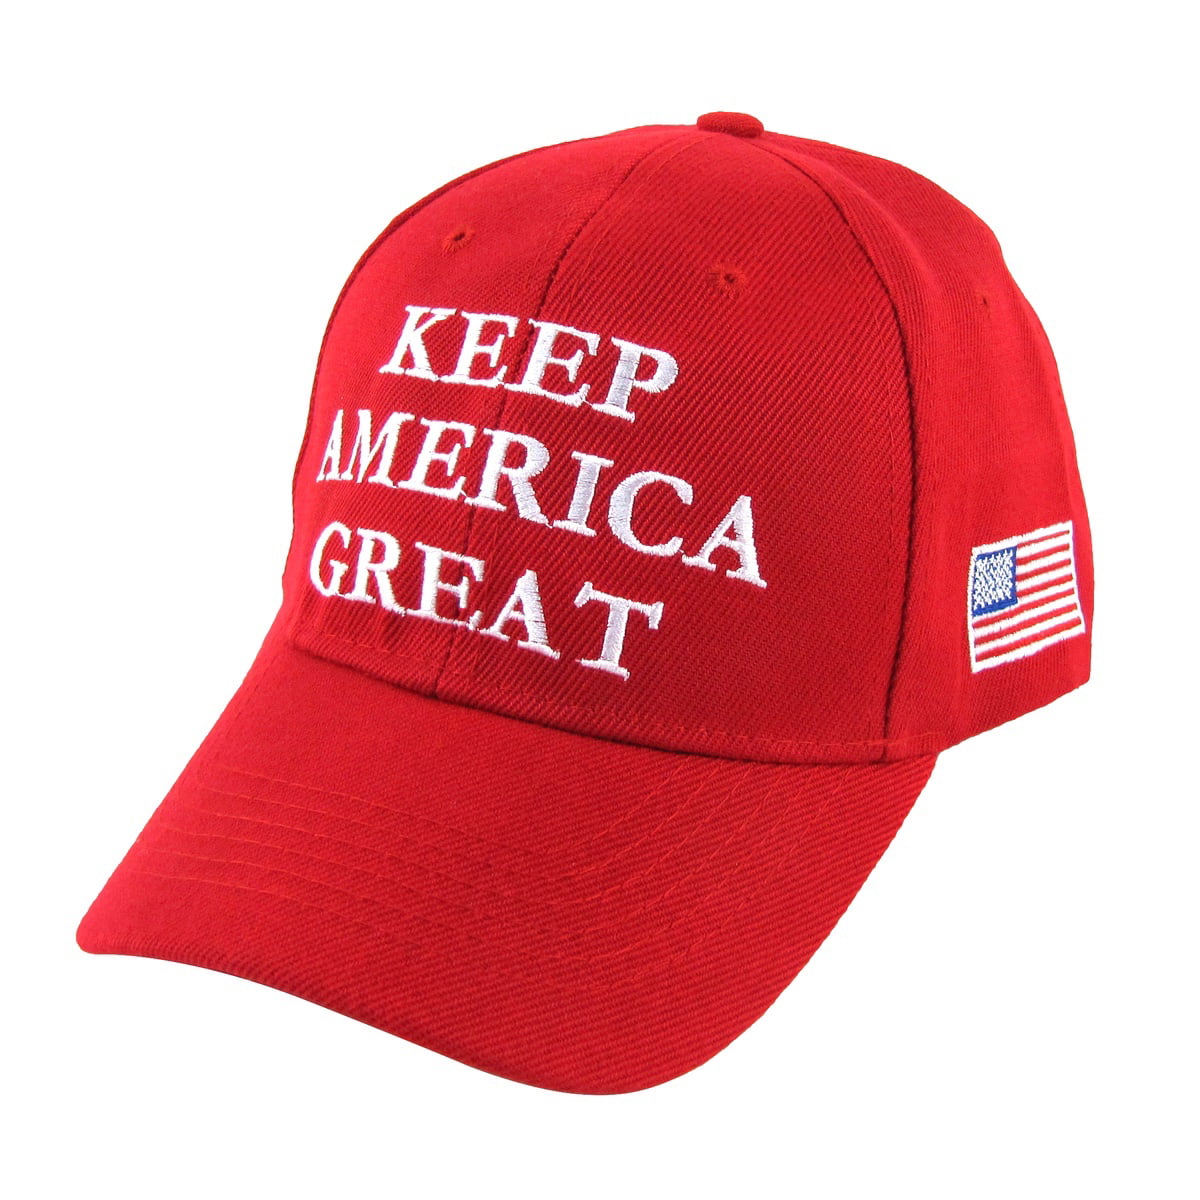 MAGA Donald Trump Keep America Great 2020 Premium Hat #KAG #MAGA 